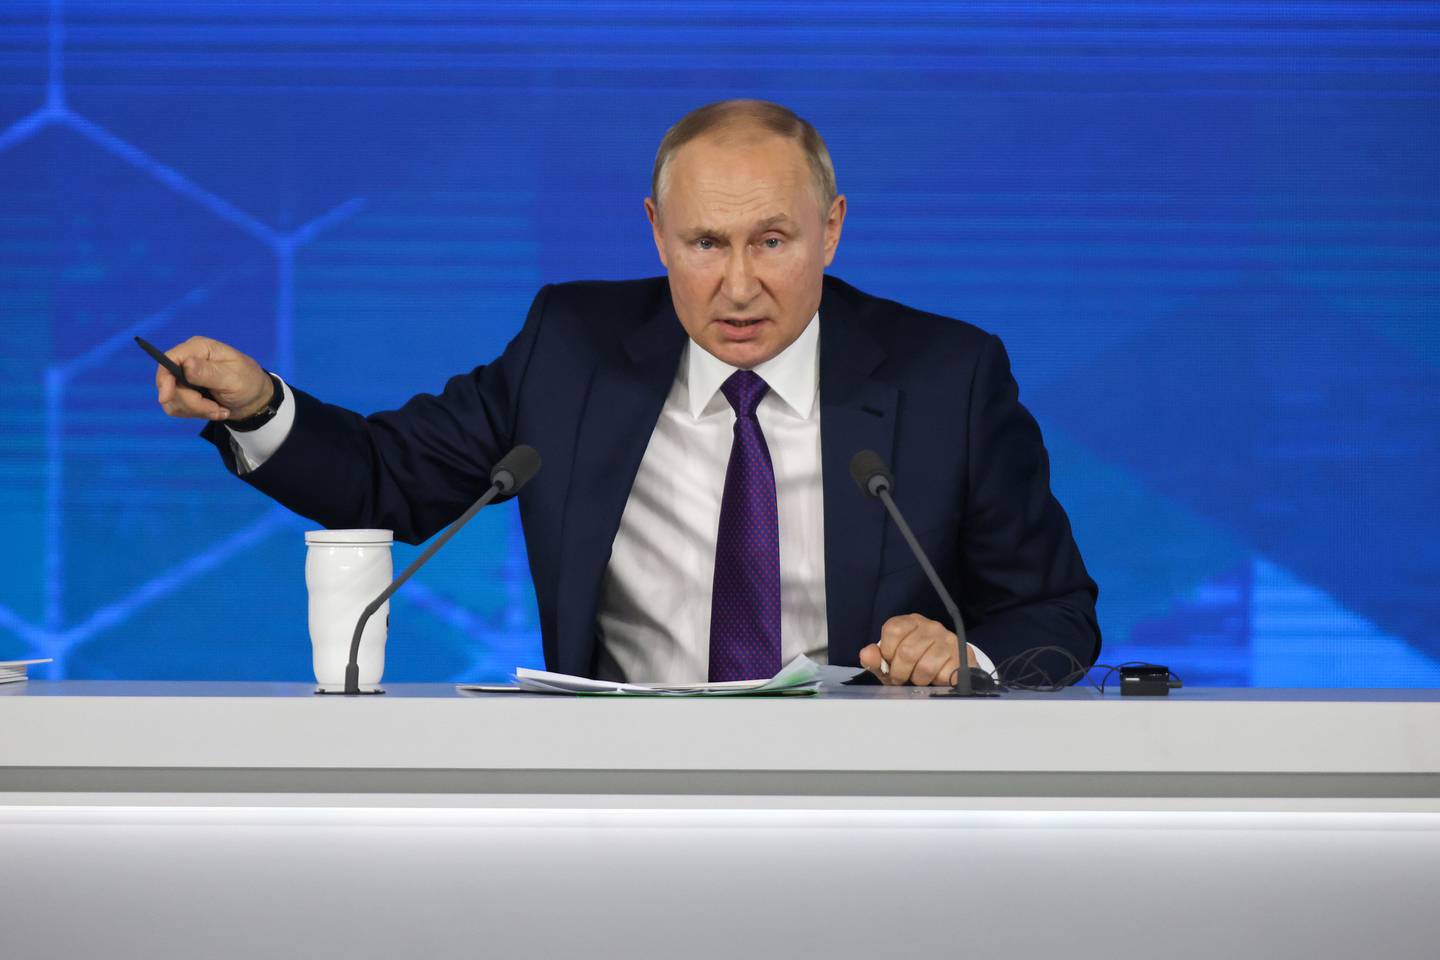 Vladimir Putin desató nuevas sanciones por parte de occidente al reconocer dos regiones separatistas de Ucrania. Fotógrafo: Andrey Rudakov/Bloomberg